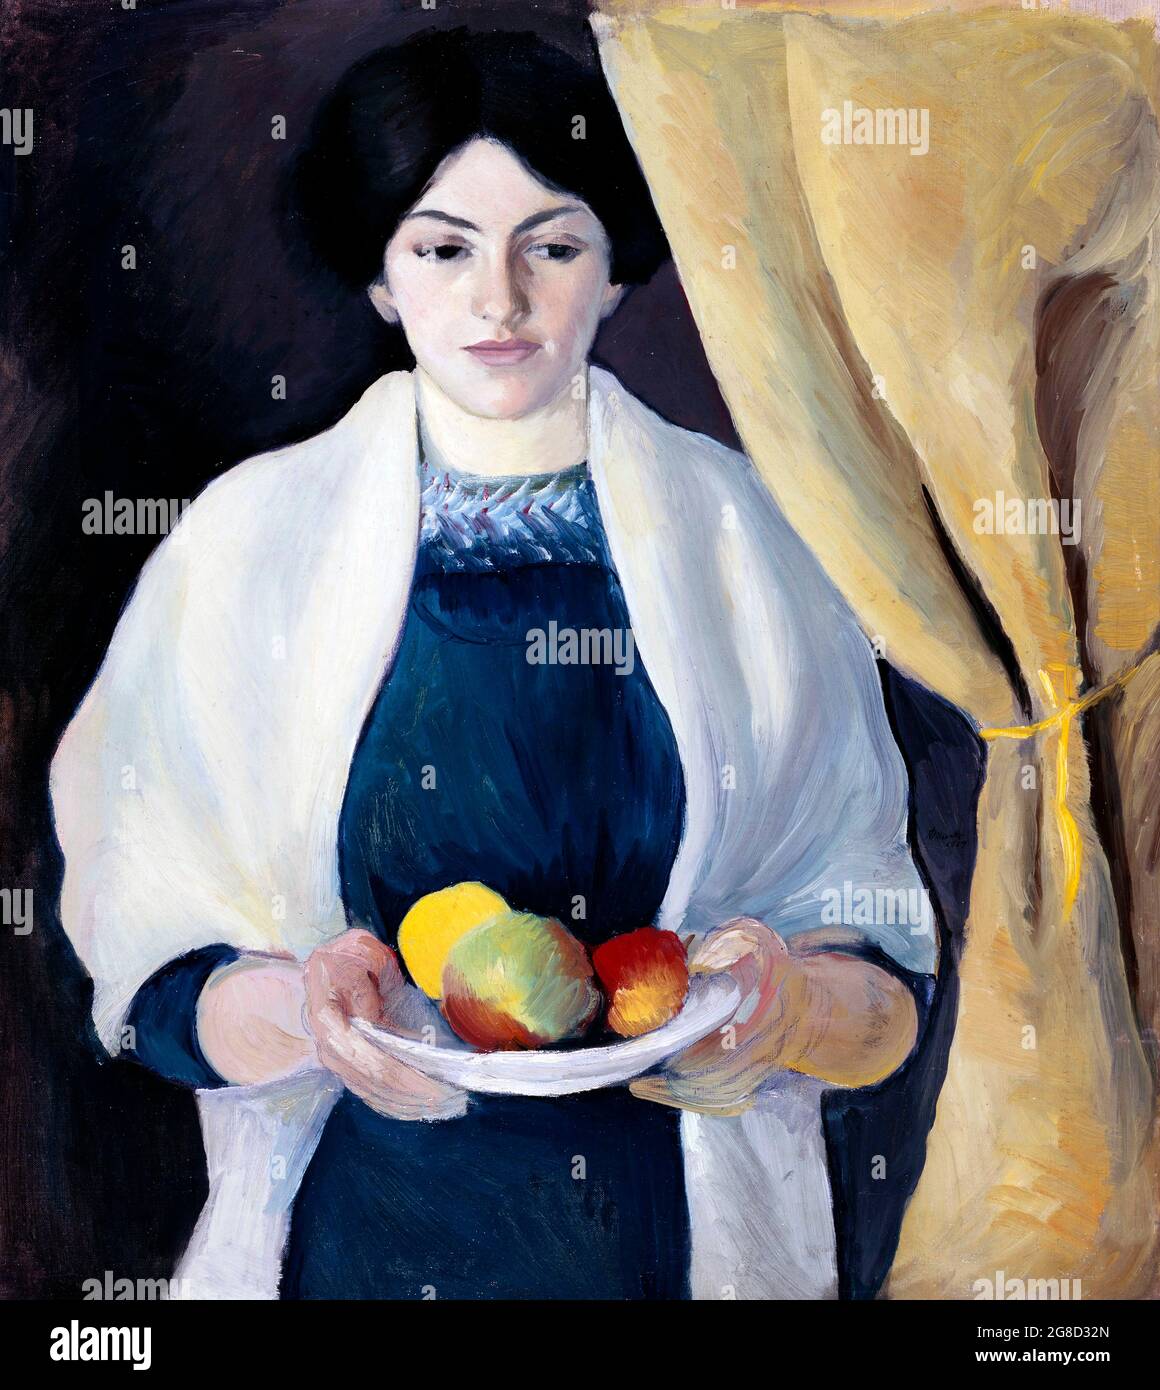 Ritratto con mele del pittore espressionista tedesco, August Macke (1887-1914), olio su tela, 1909 Foto Stock